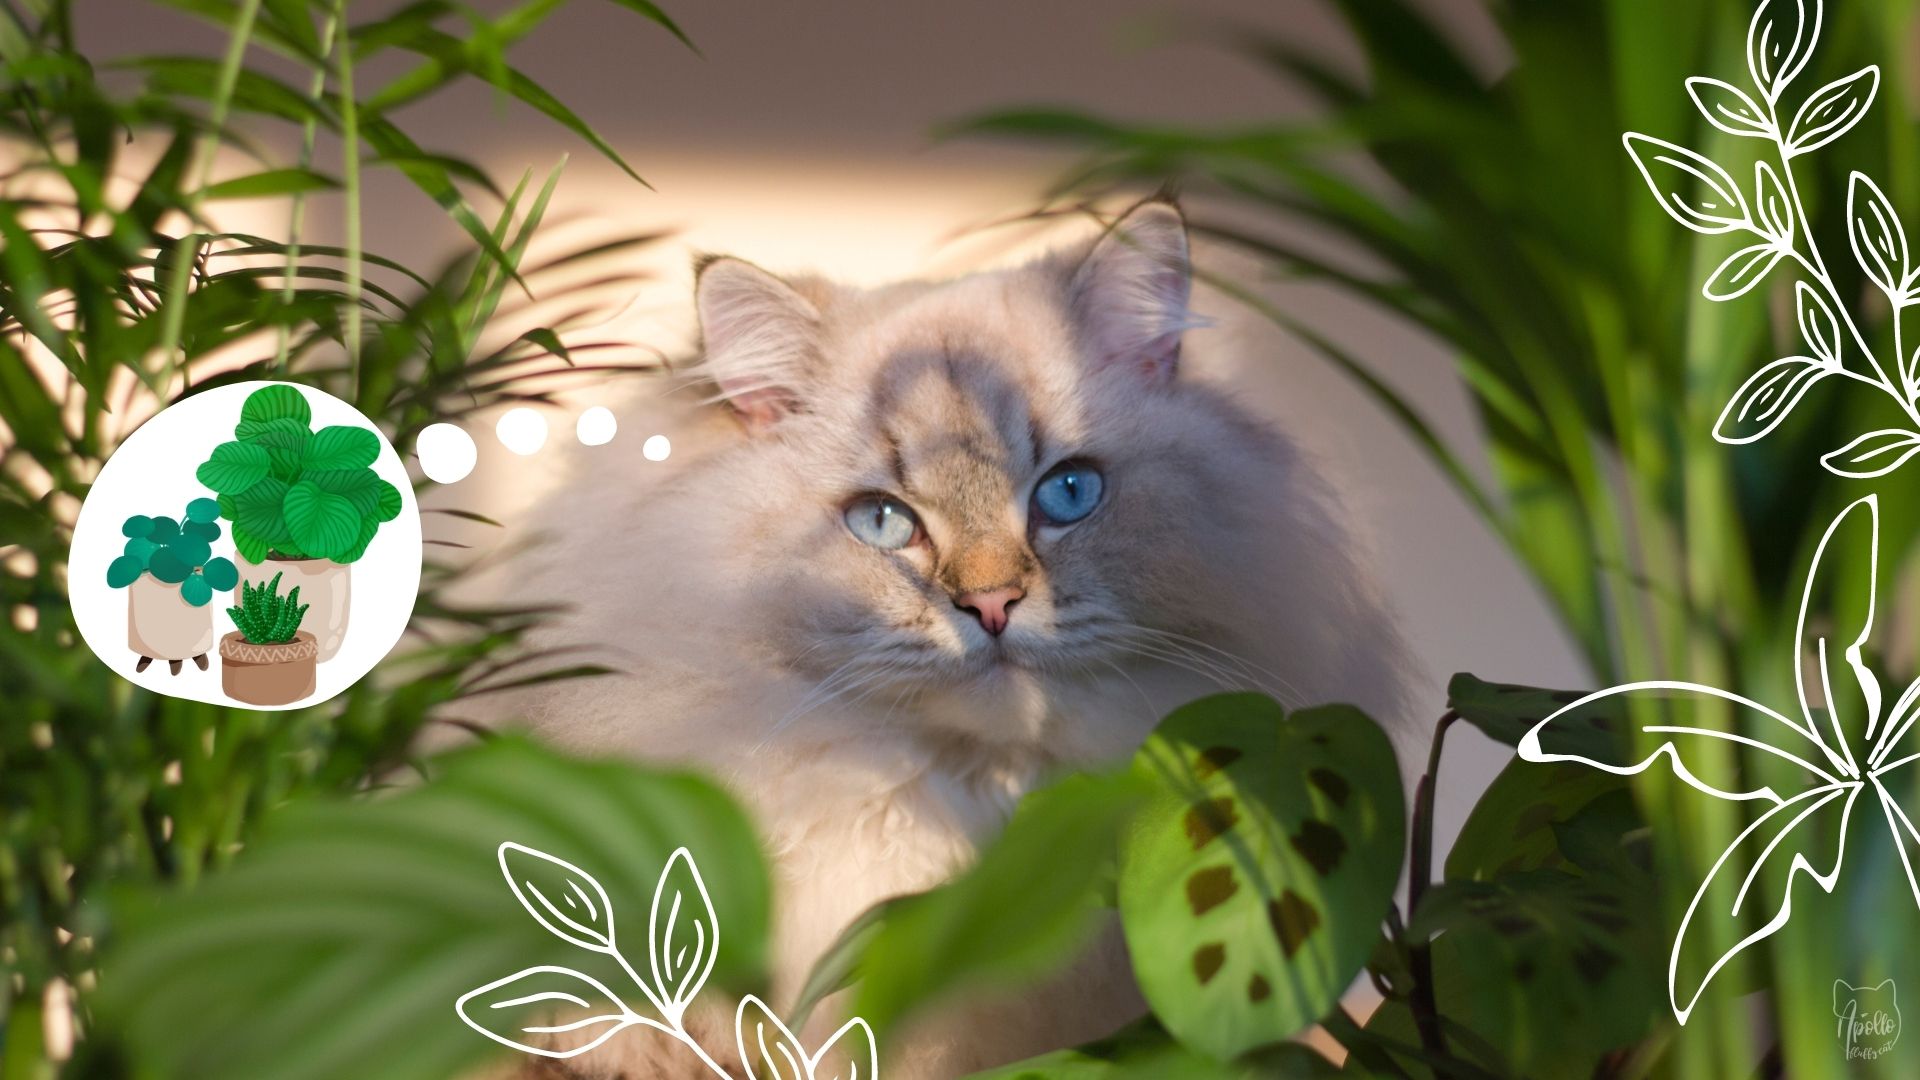 Cat-friendly indoor houseplants for beginners